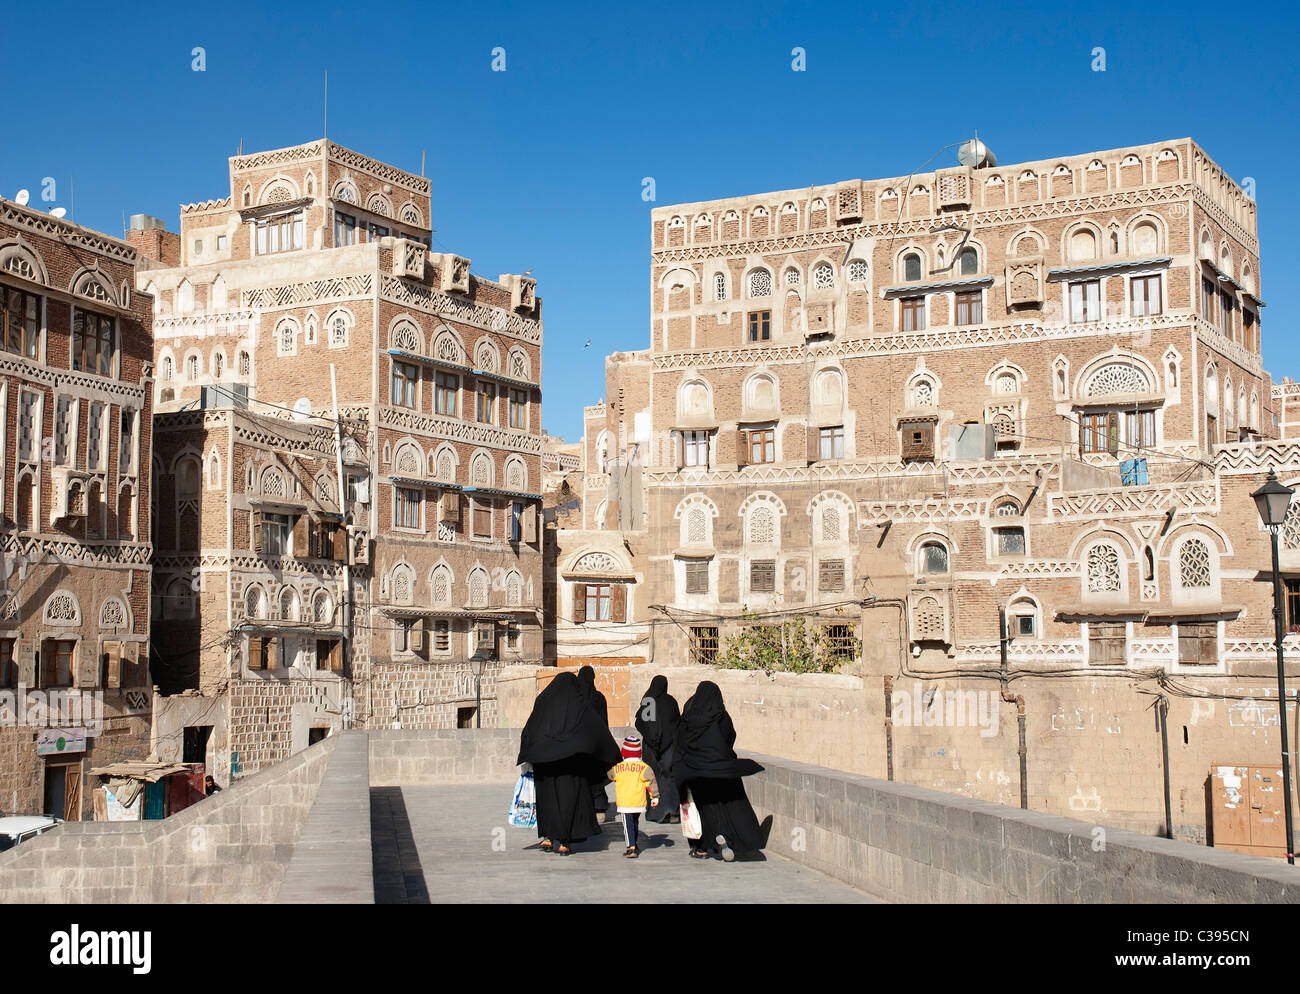 Scena di strada in sanaa città vecchia in Yemen Foto Stock